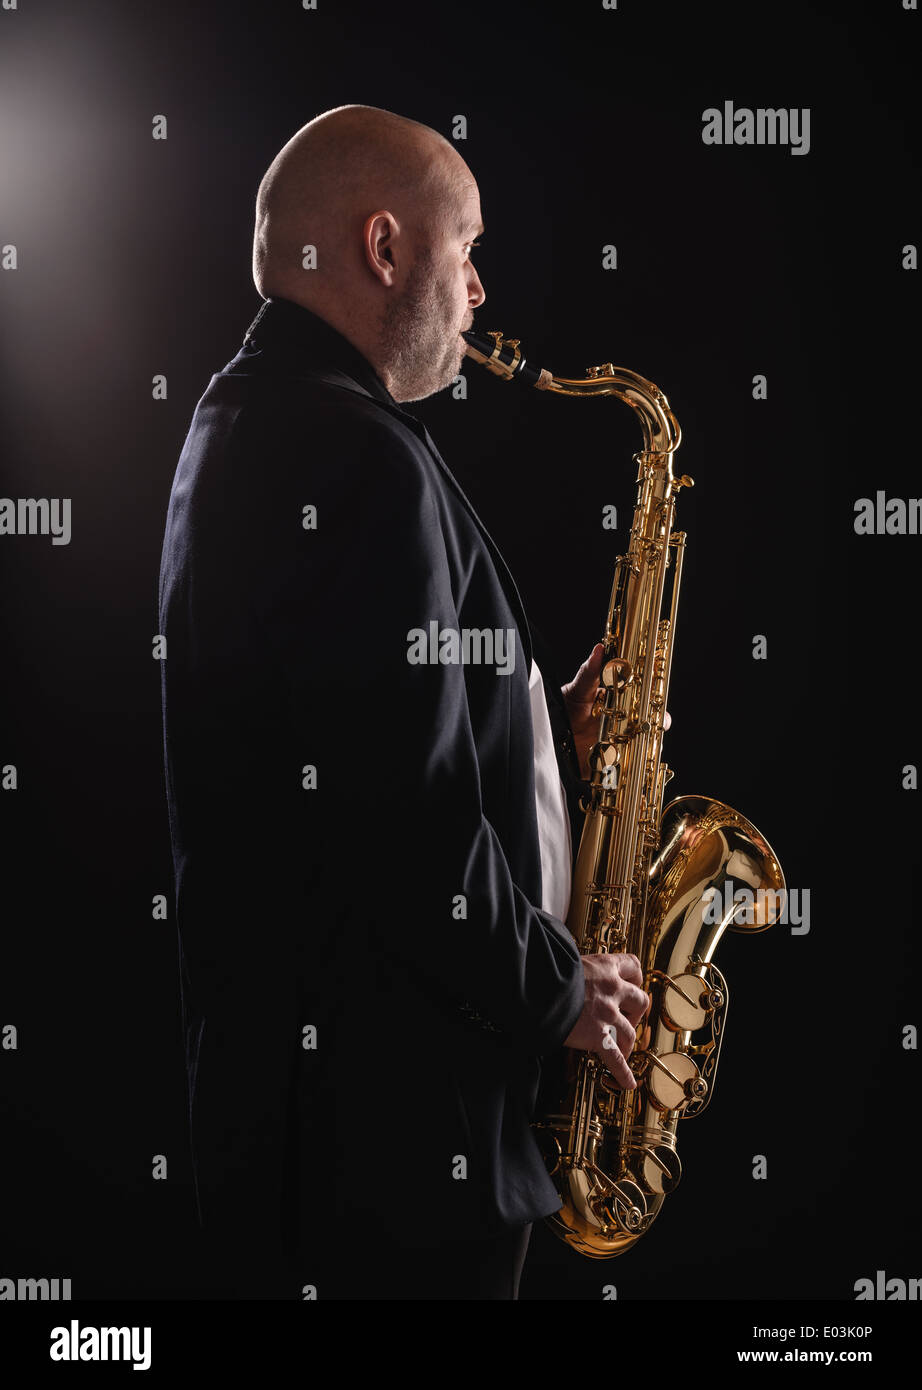 Des profils musician playing saxophone ténor, fond sombre Banque D'Images